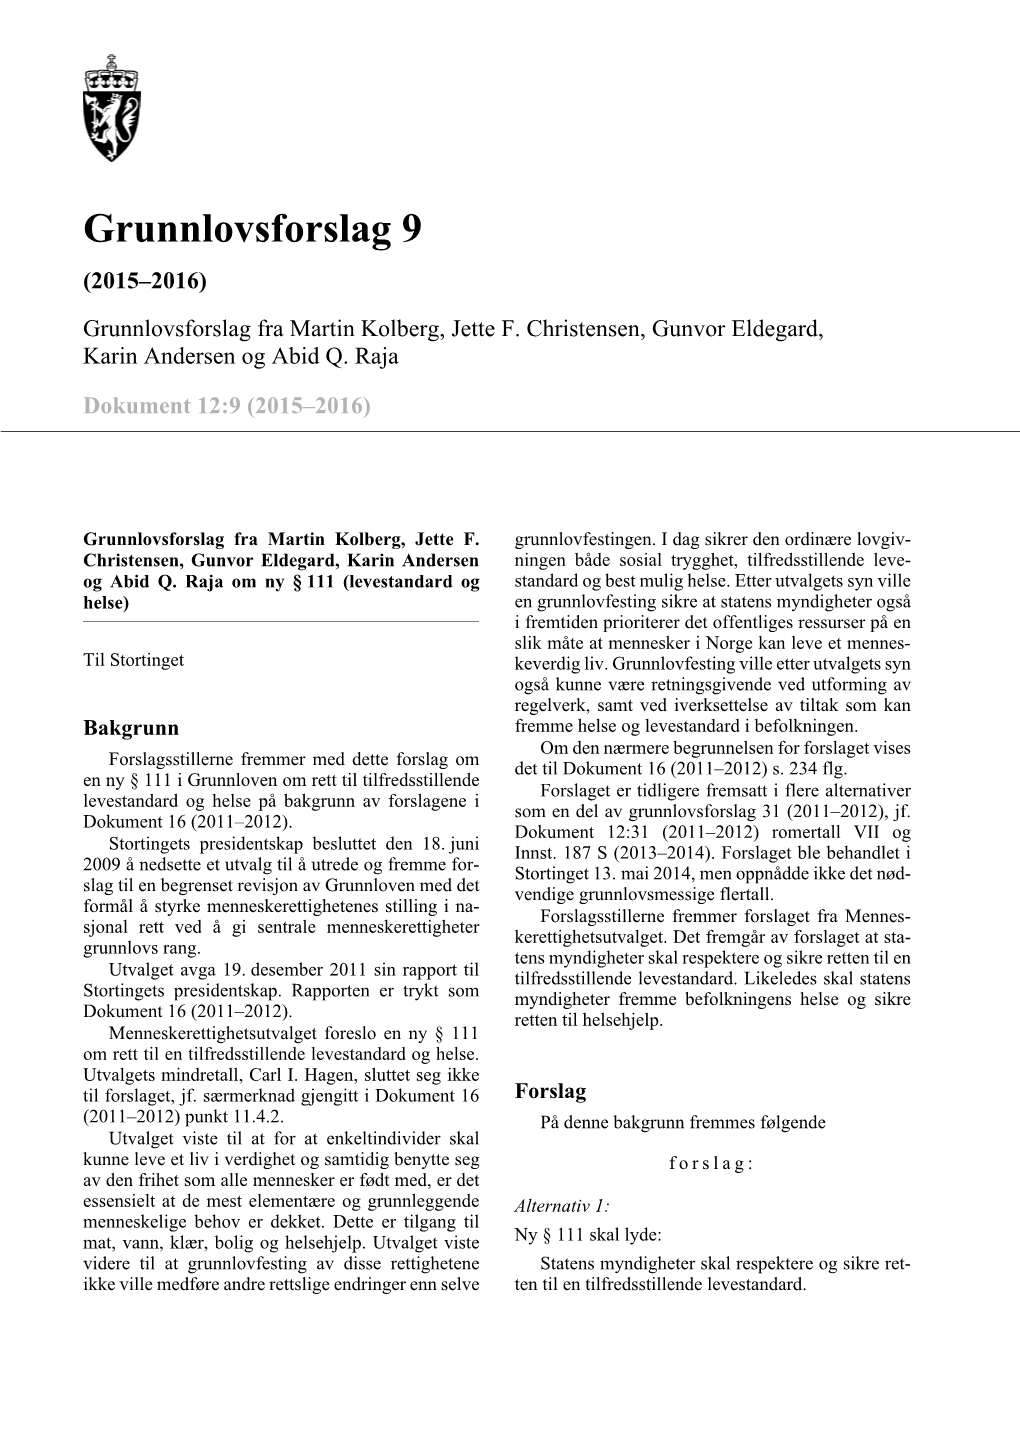 Grunnlovsforslag 9 (2015–2016) Grunnlovsforslag Fra Martin Kolberg, Jette F